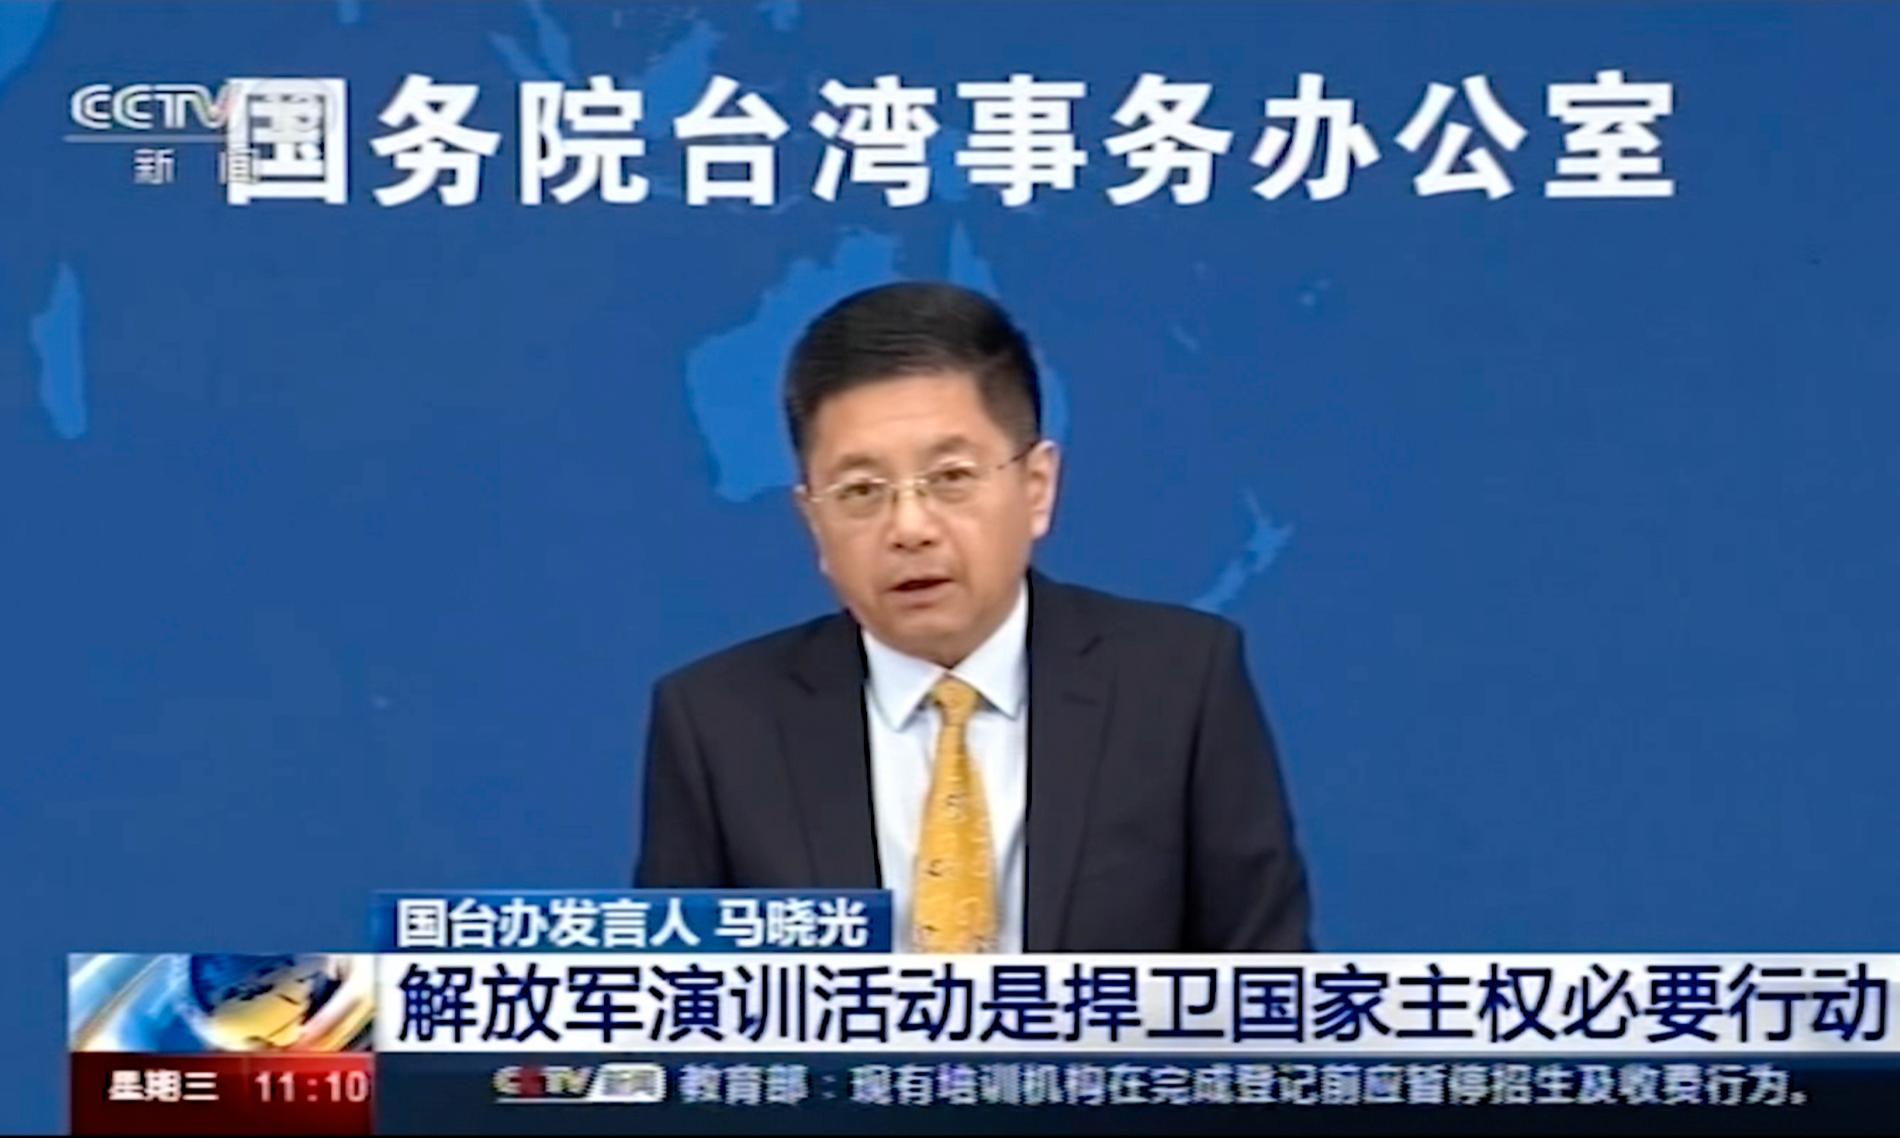 Ma Xiaoguang uttalade sig om Taiwan på en tv-sänd presskonferens.